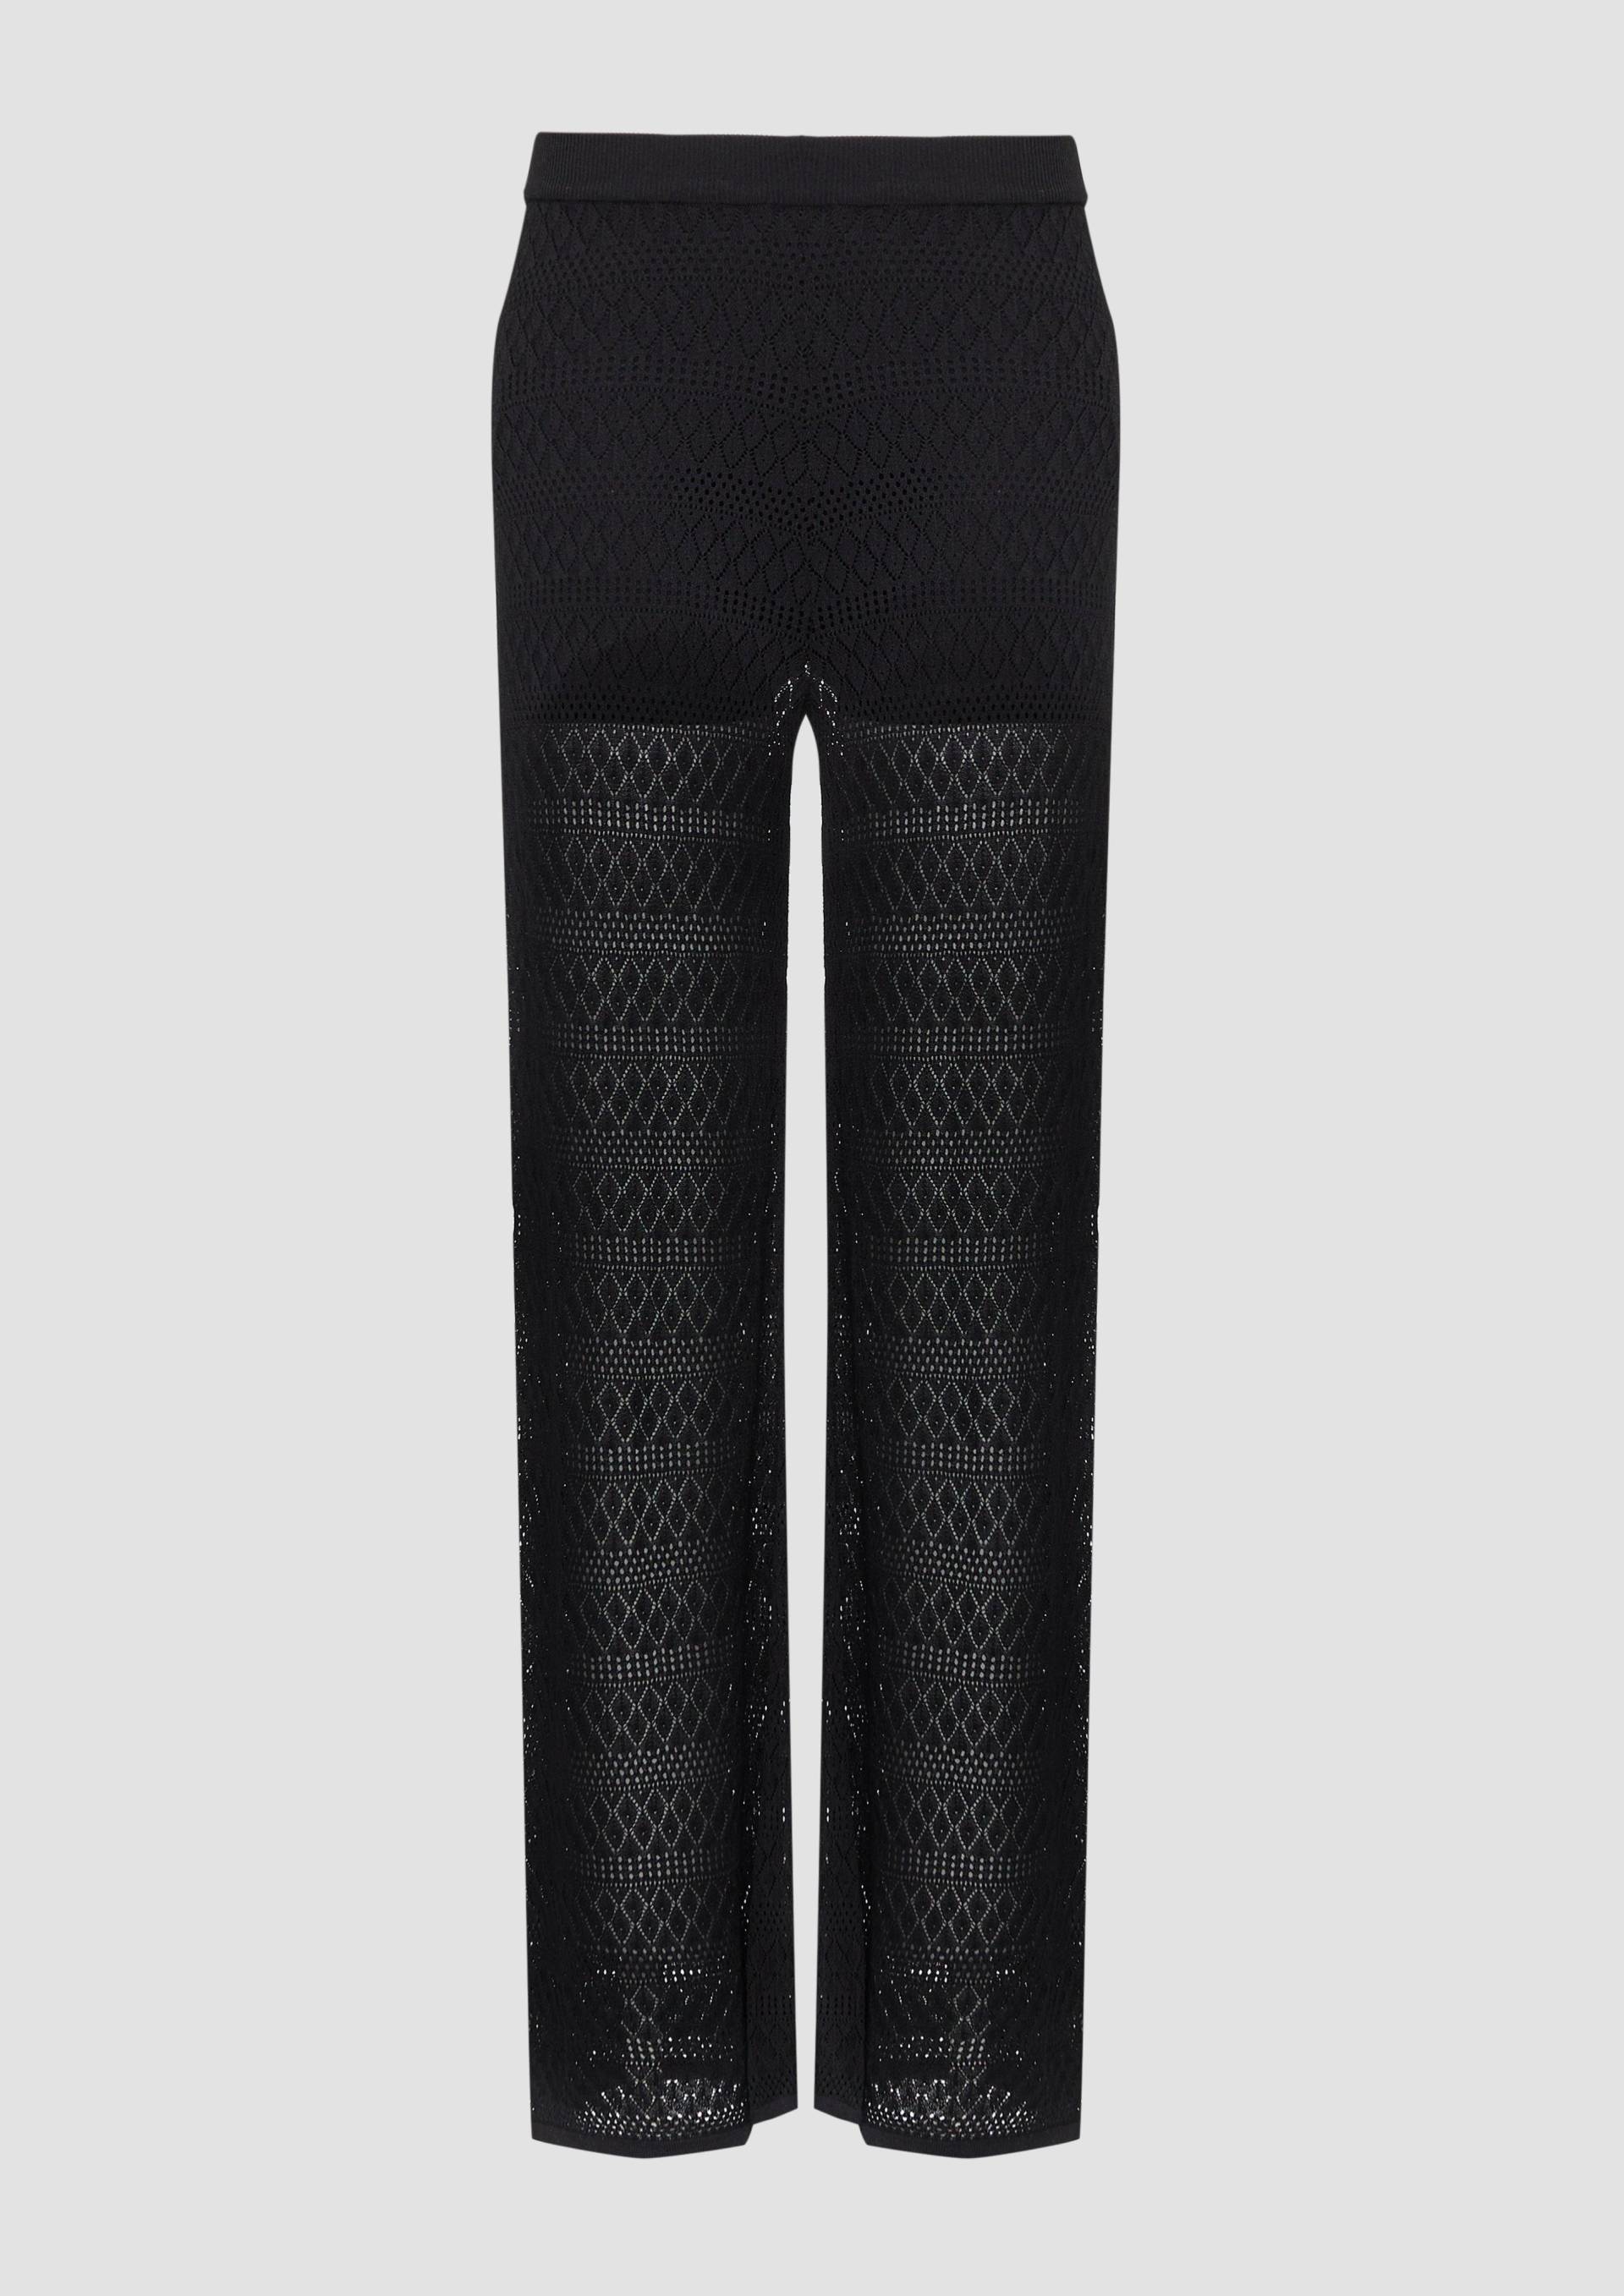 QS - Transparente Feinstrick-Hose mit Ajourmuster und Baumwollfutter, Damen, schwarz von QS